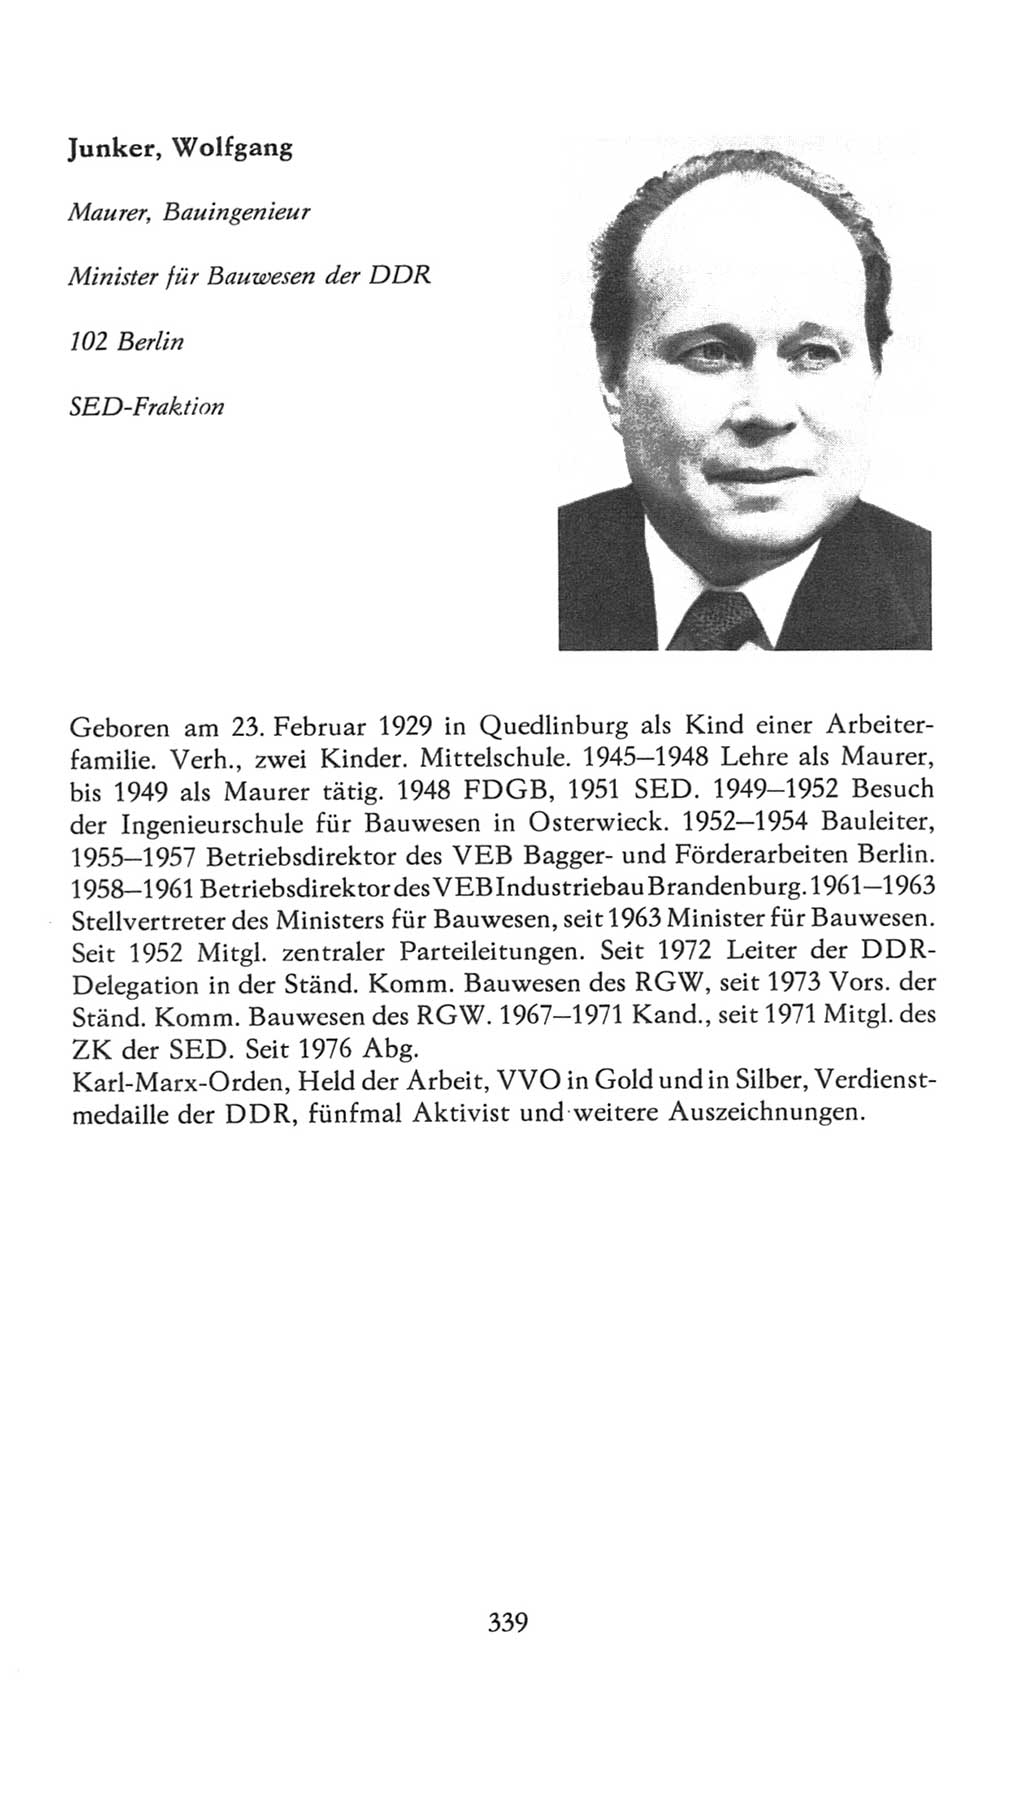 Volkskammer (VK) der Deutschen Demokratischen Republik (DDR), 7. Wahlperiode 1976-1981, Seite 339 (VK. DDR 7. WP. 1976-1981, S. 339)